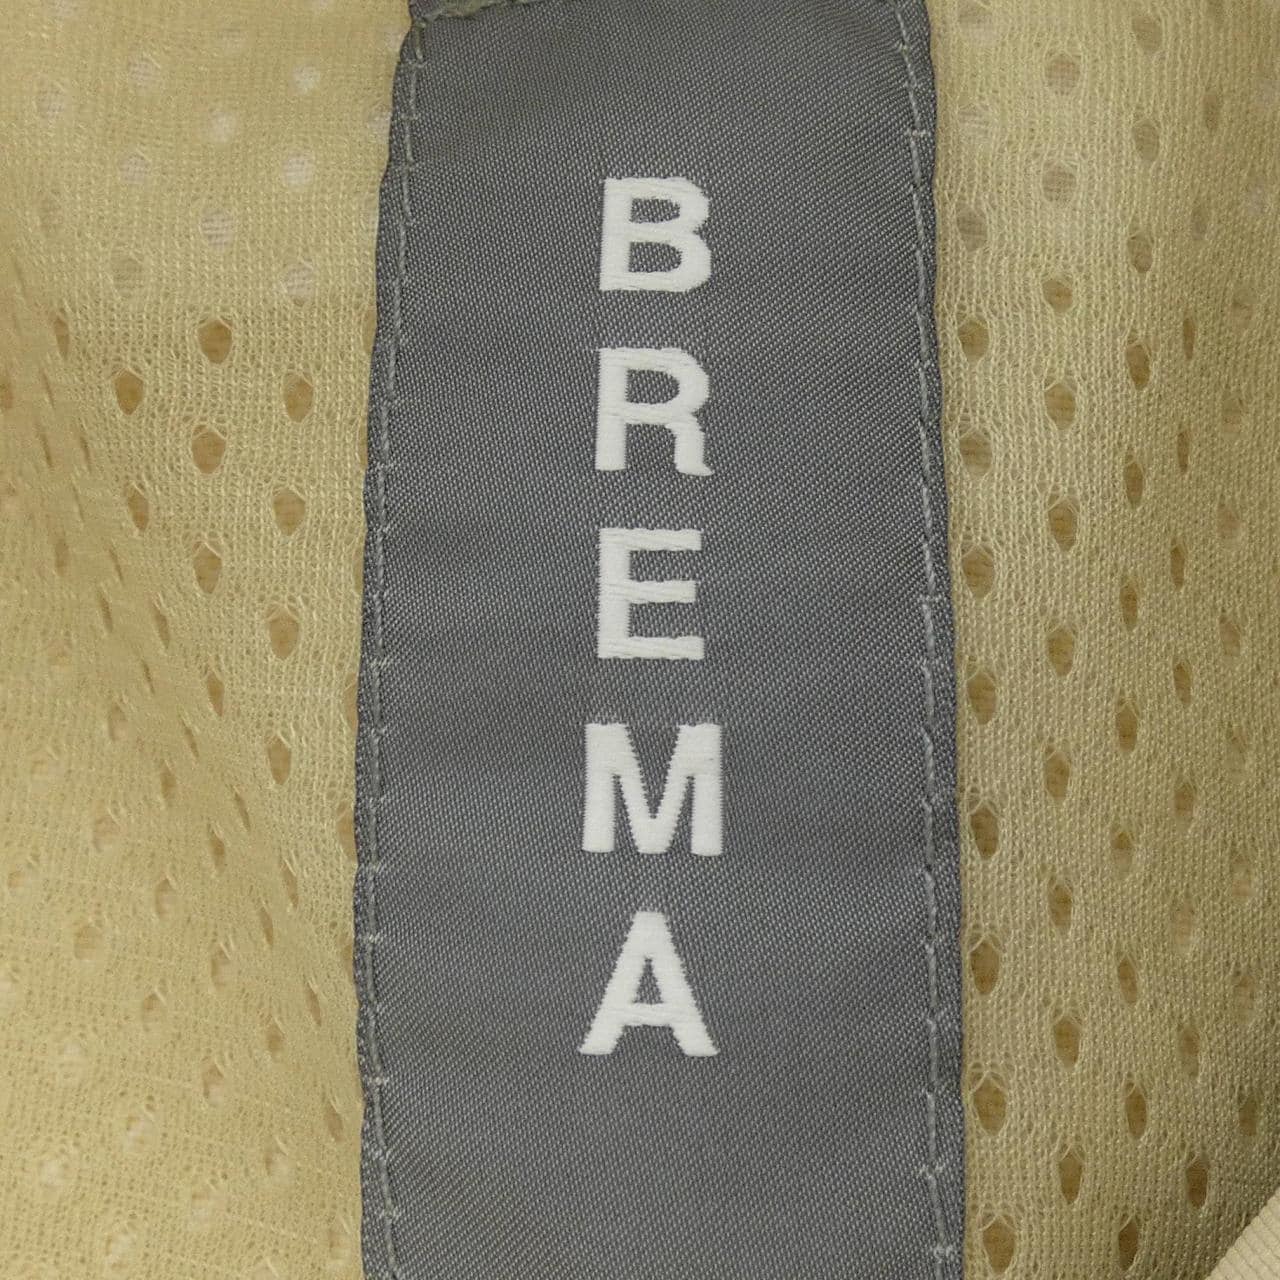 BREMA ジャケット